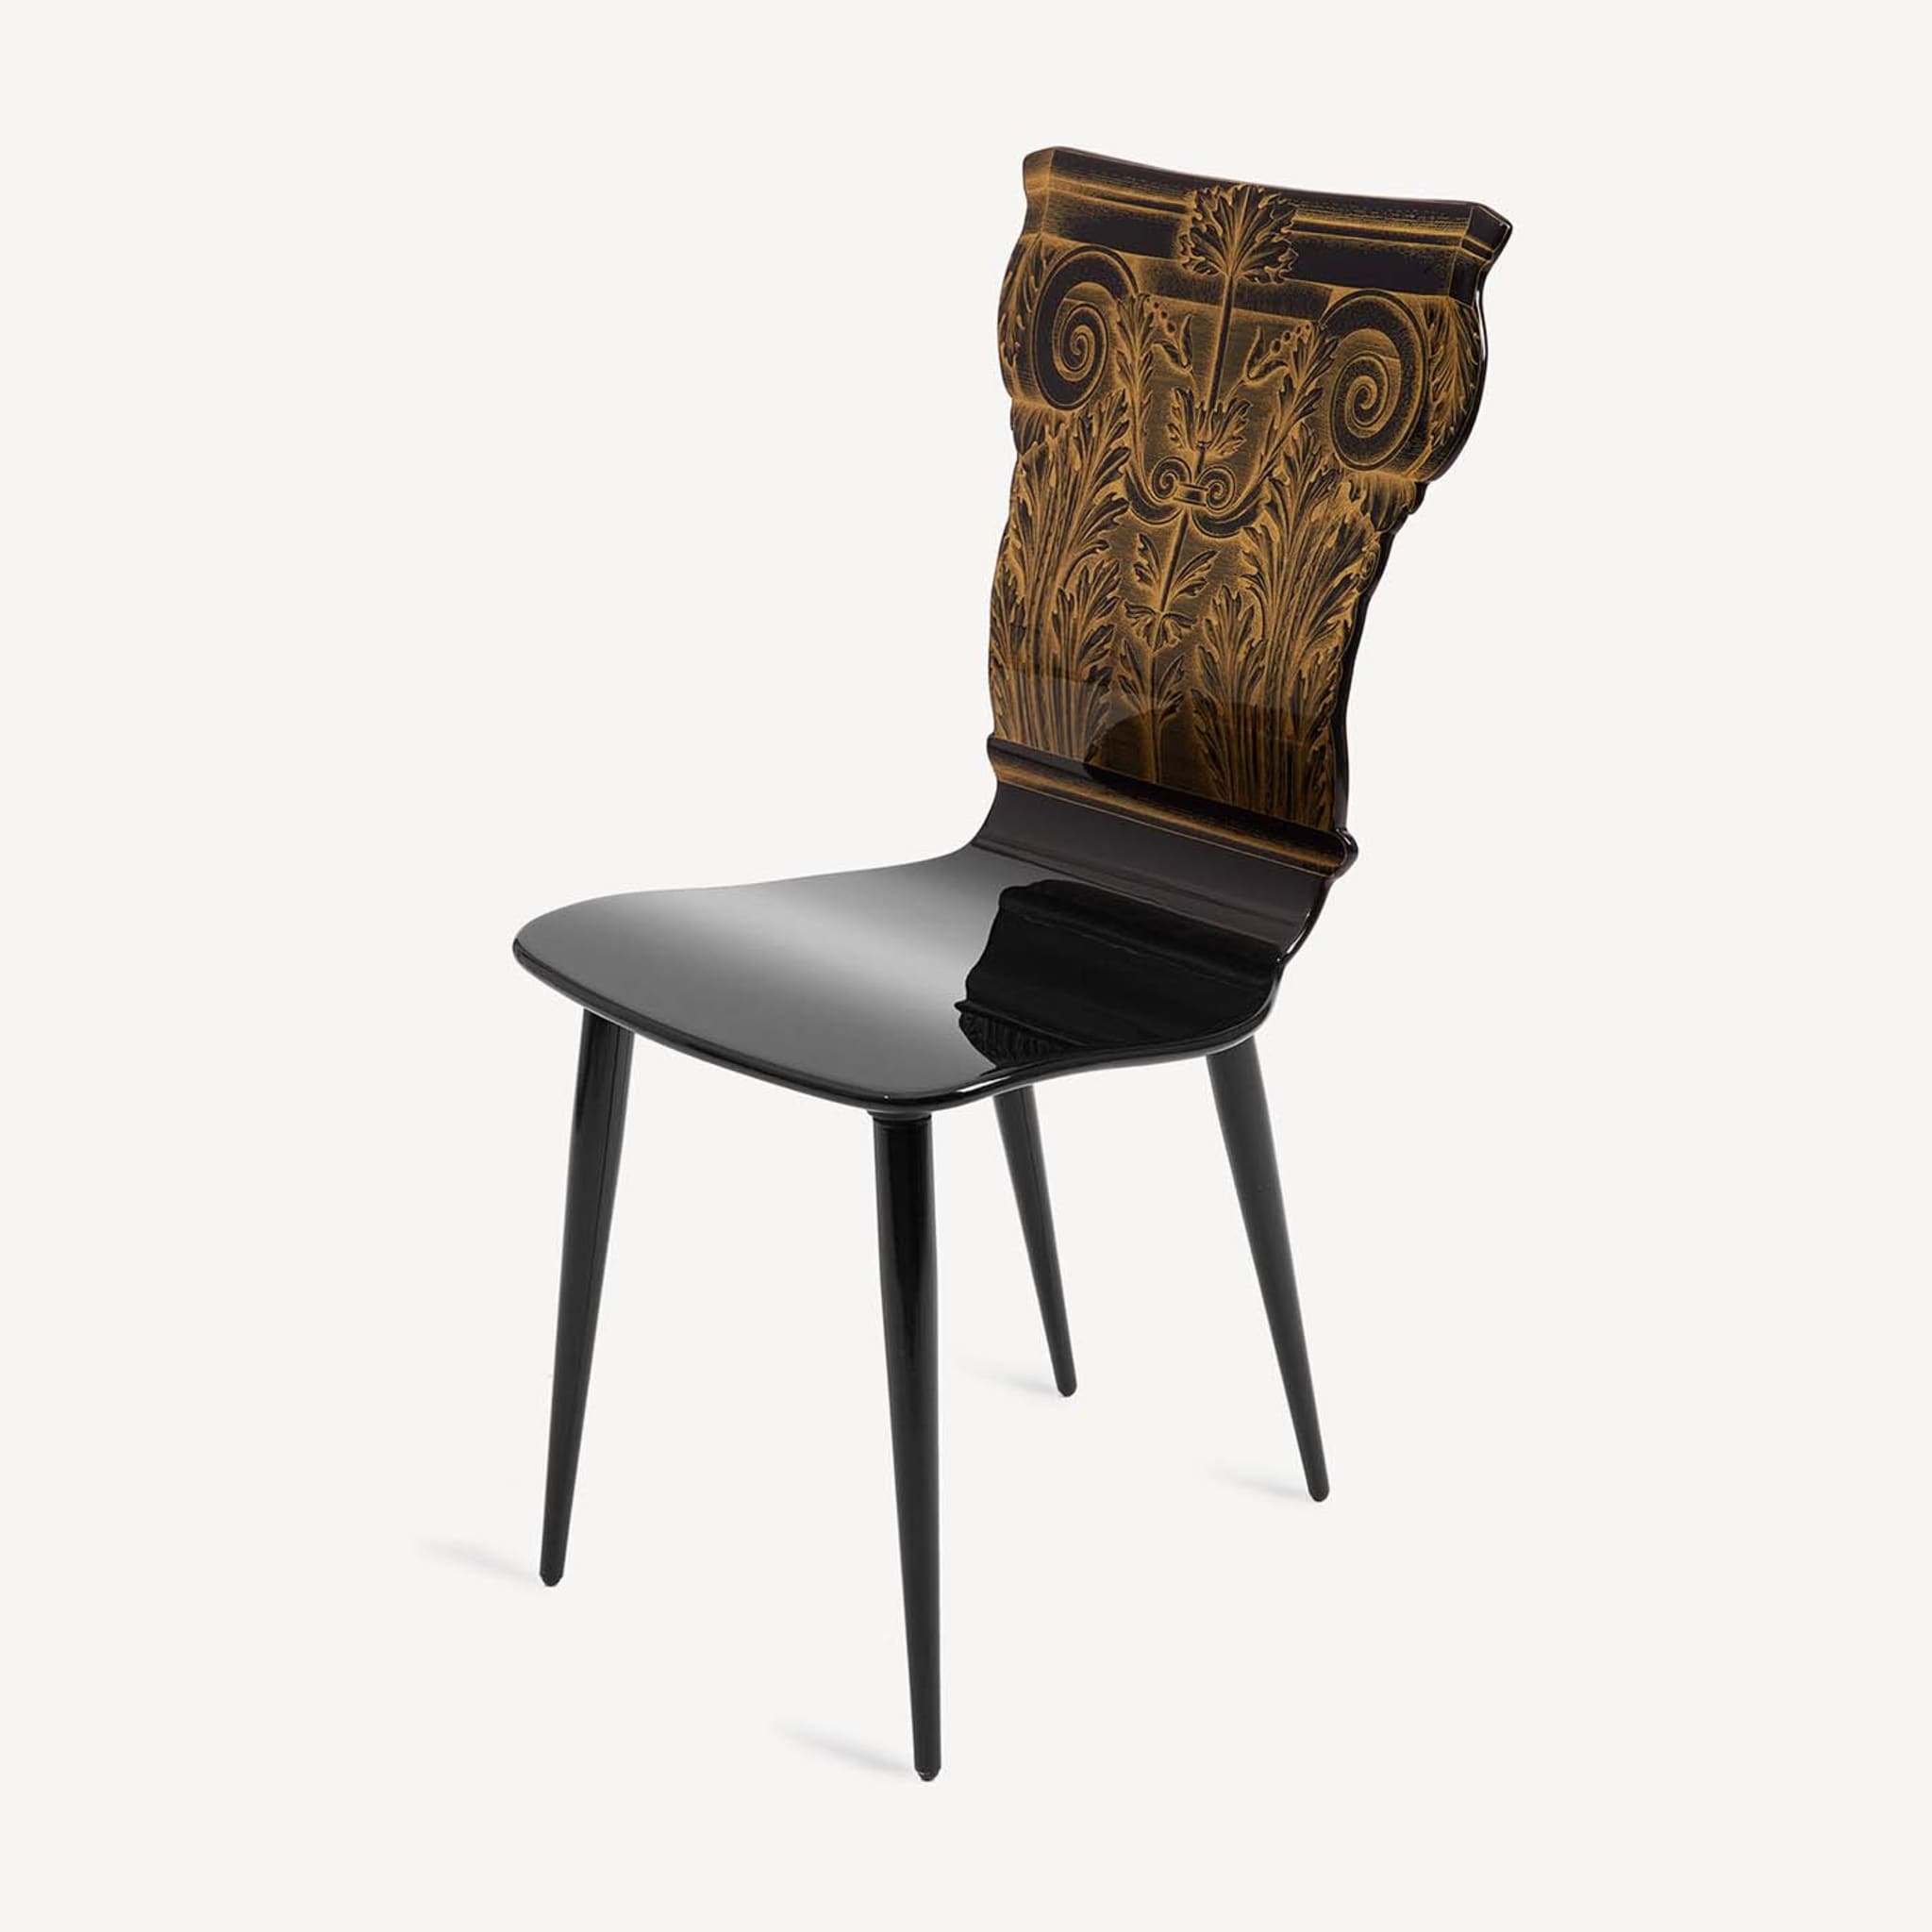 Capitello Corinzio Chair #1 - Alternative view 3